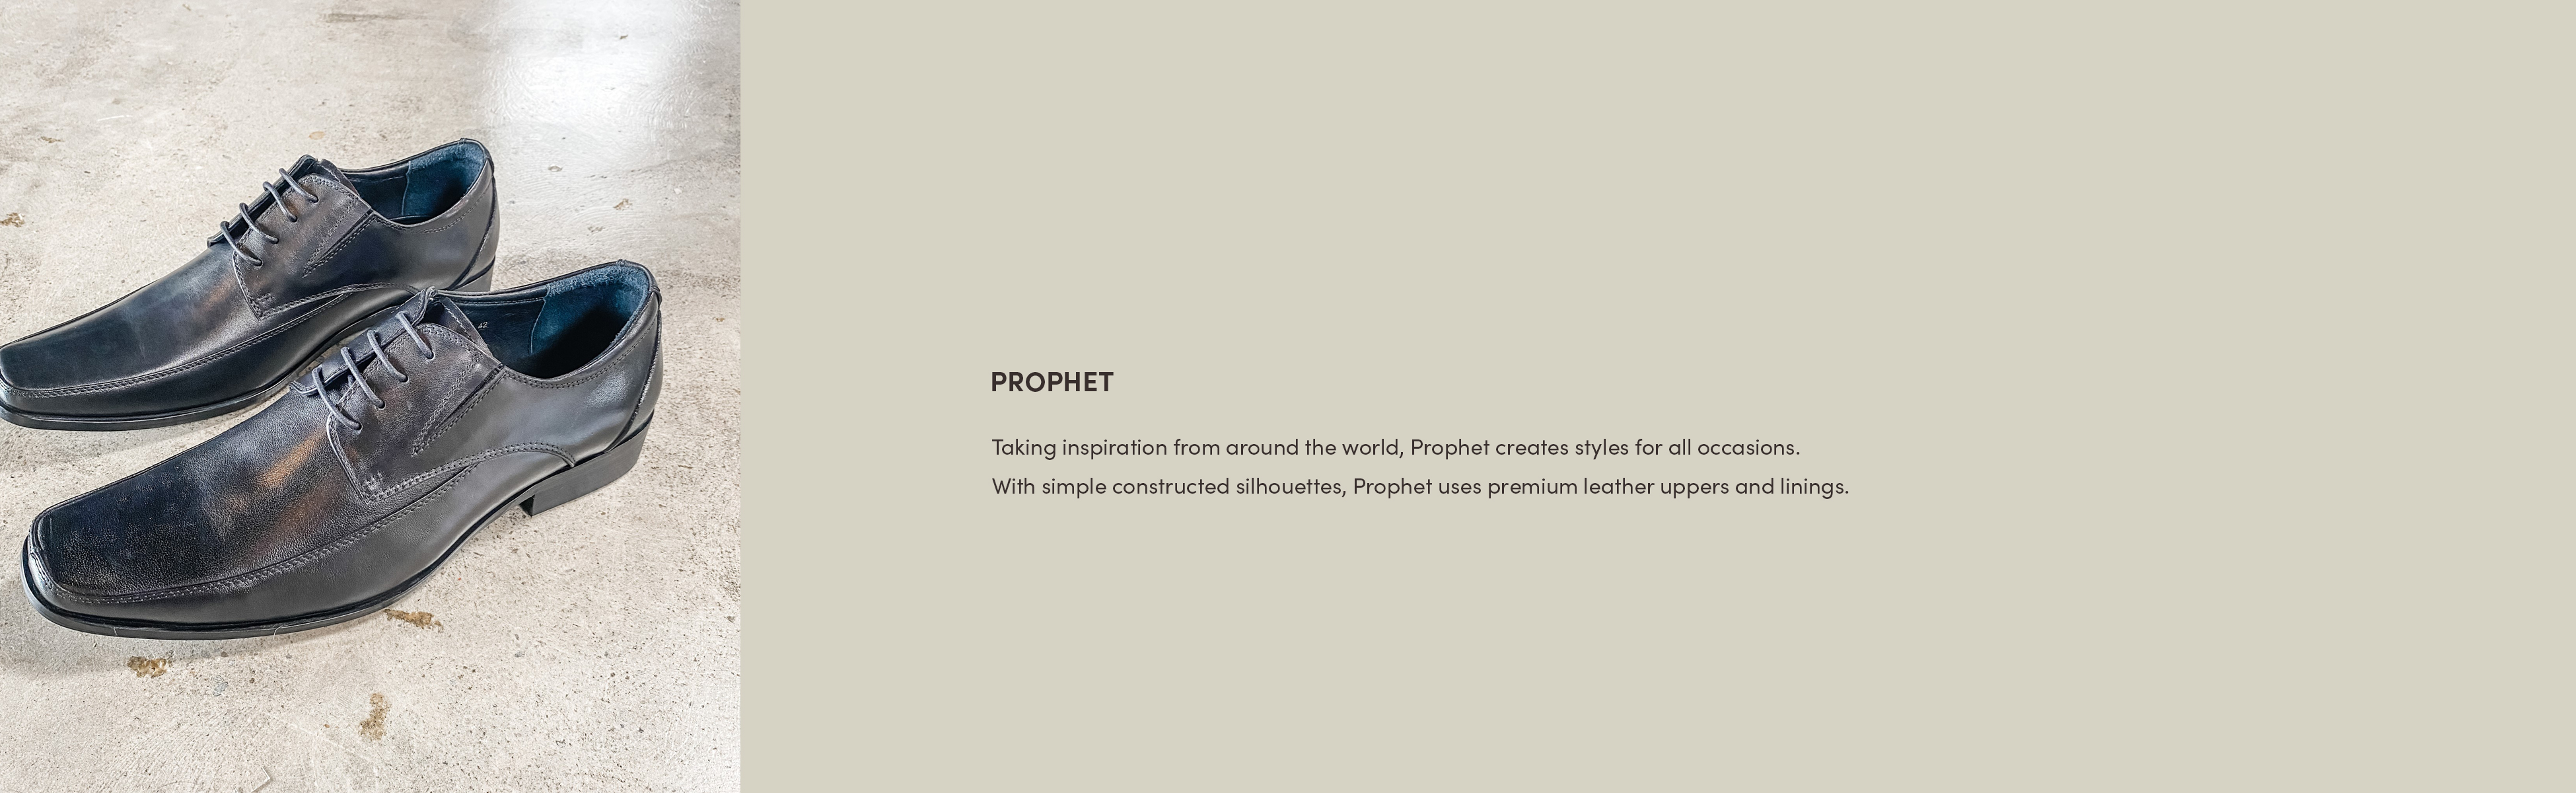 Prophet_banner